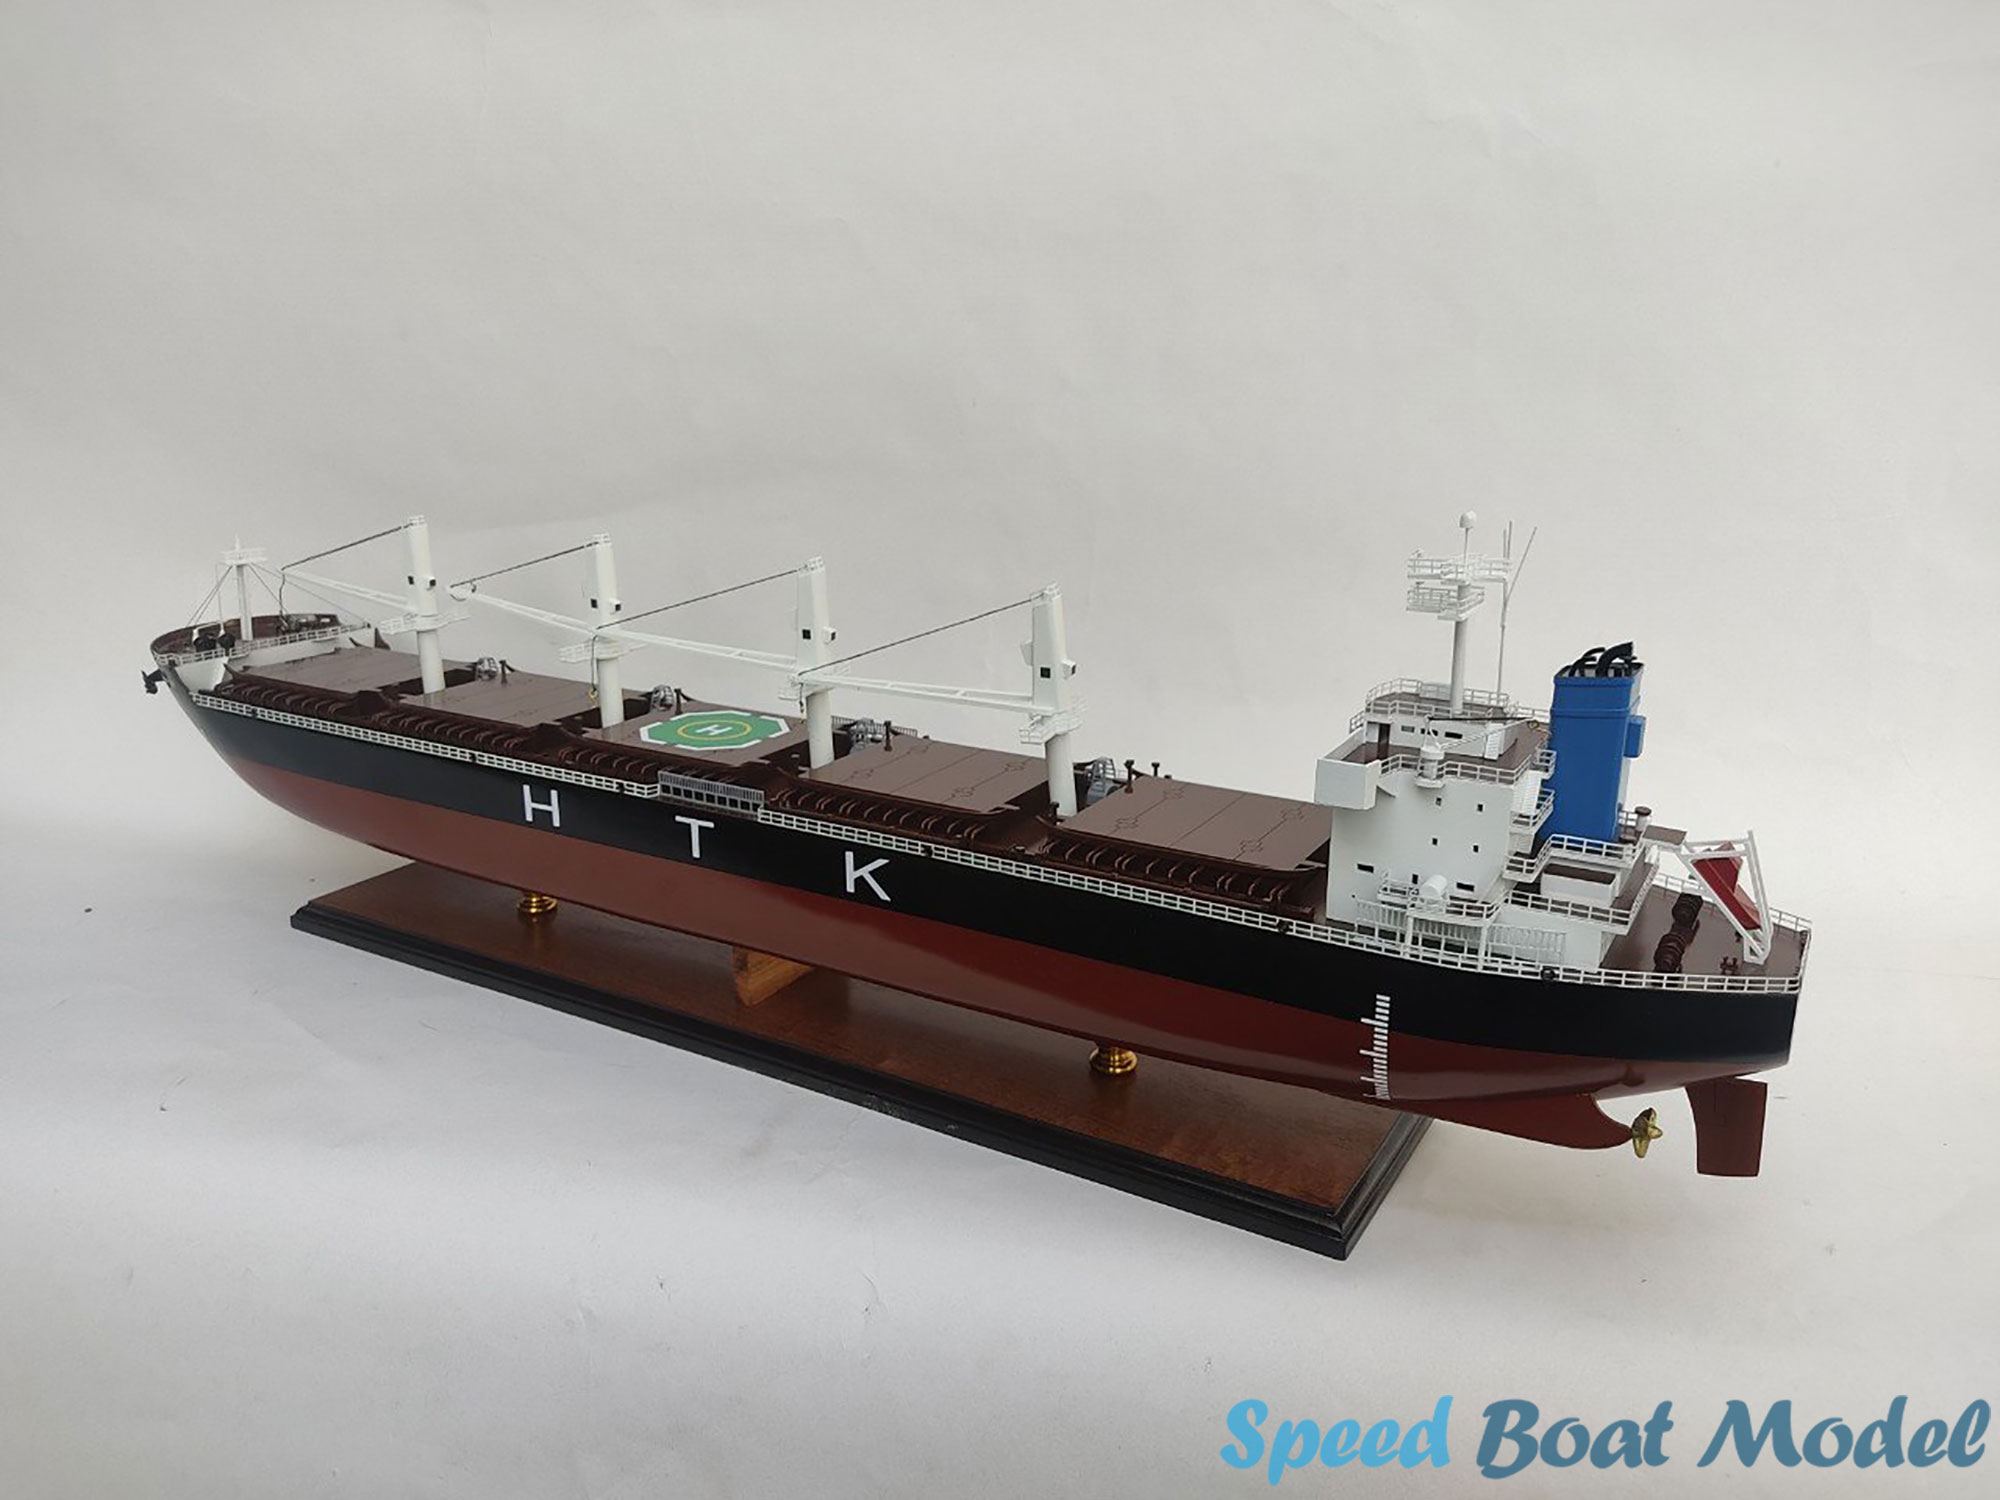 Htk New Sky Commercial Ship Model 39.3